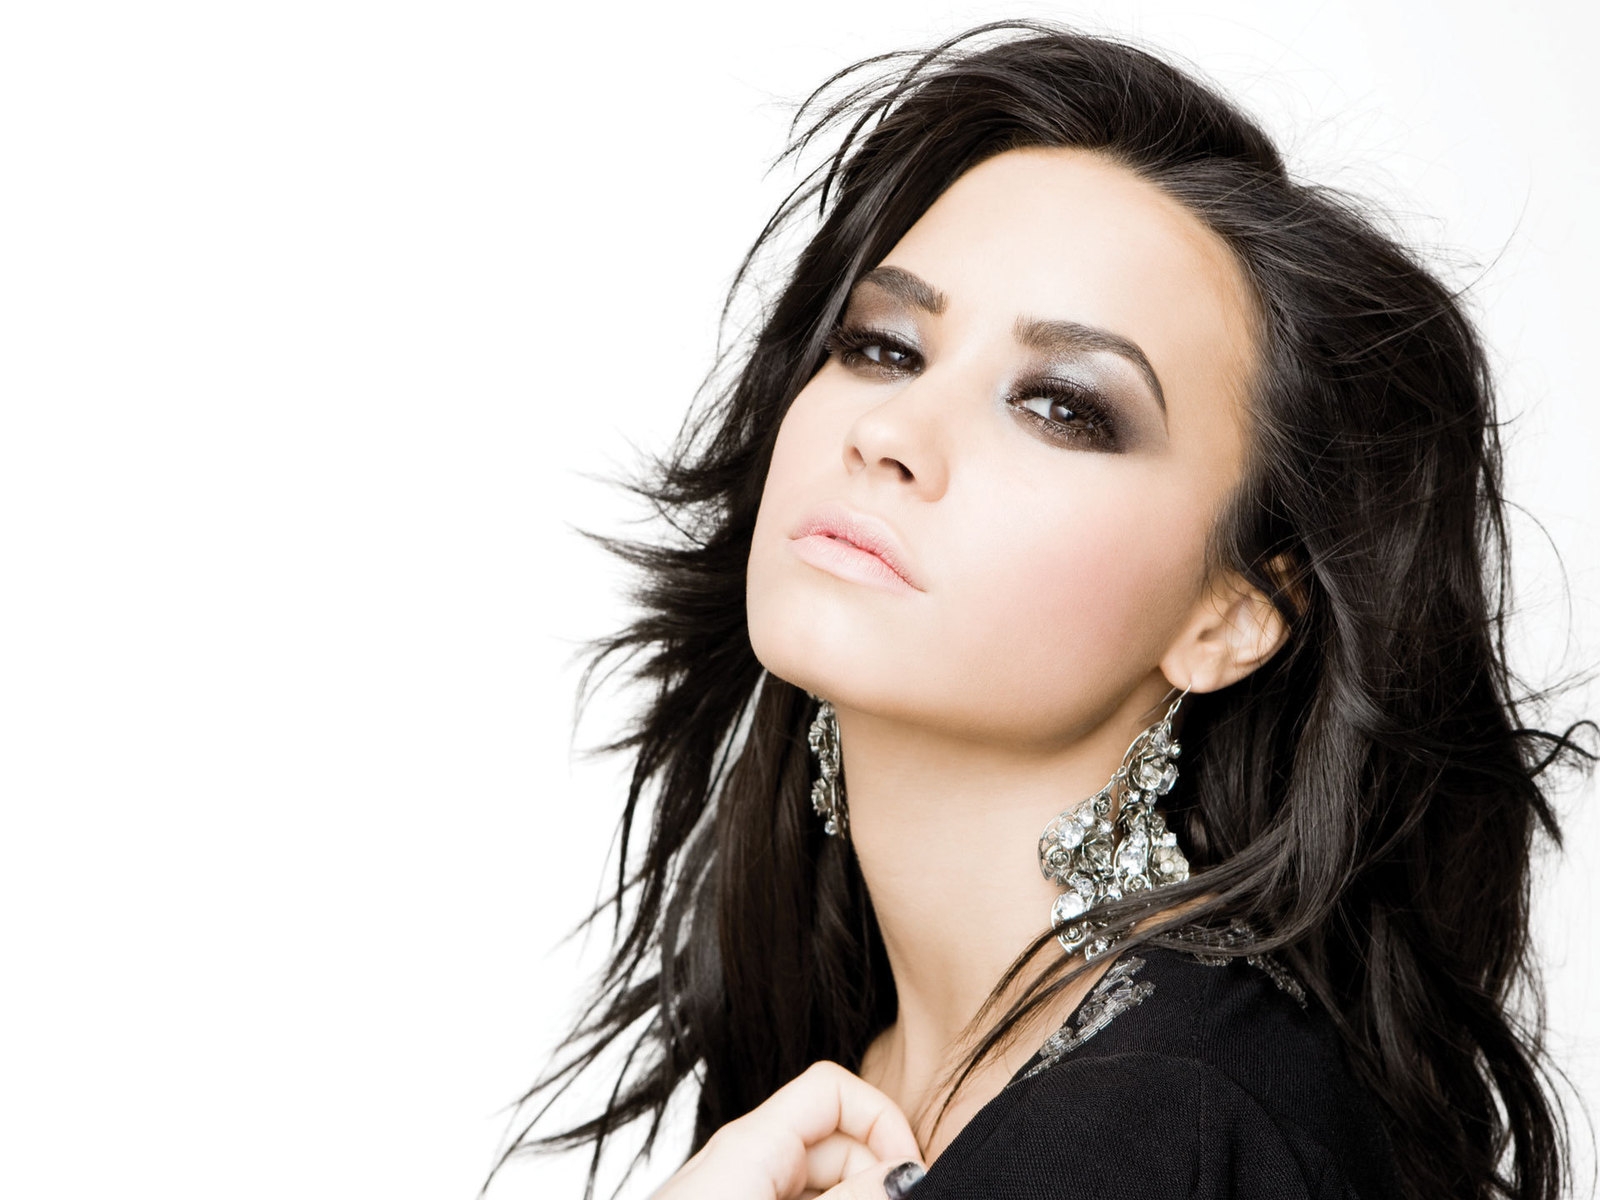 Demi Lovato Beautiful for 1600 x 1200 resolution